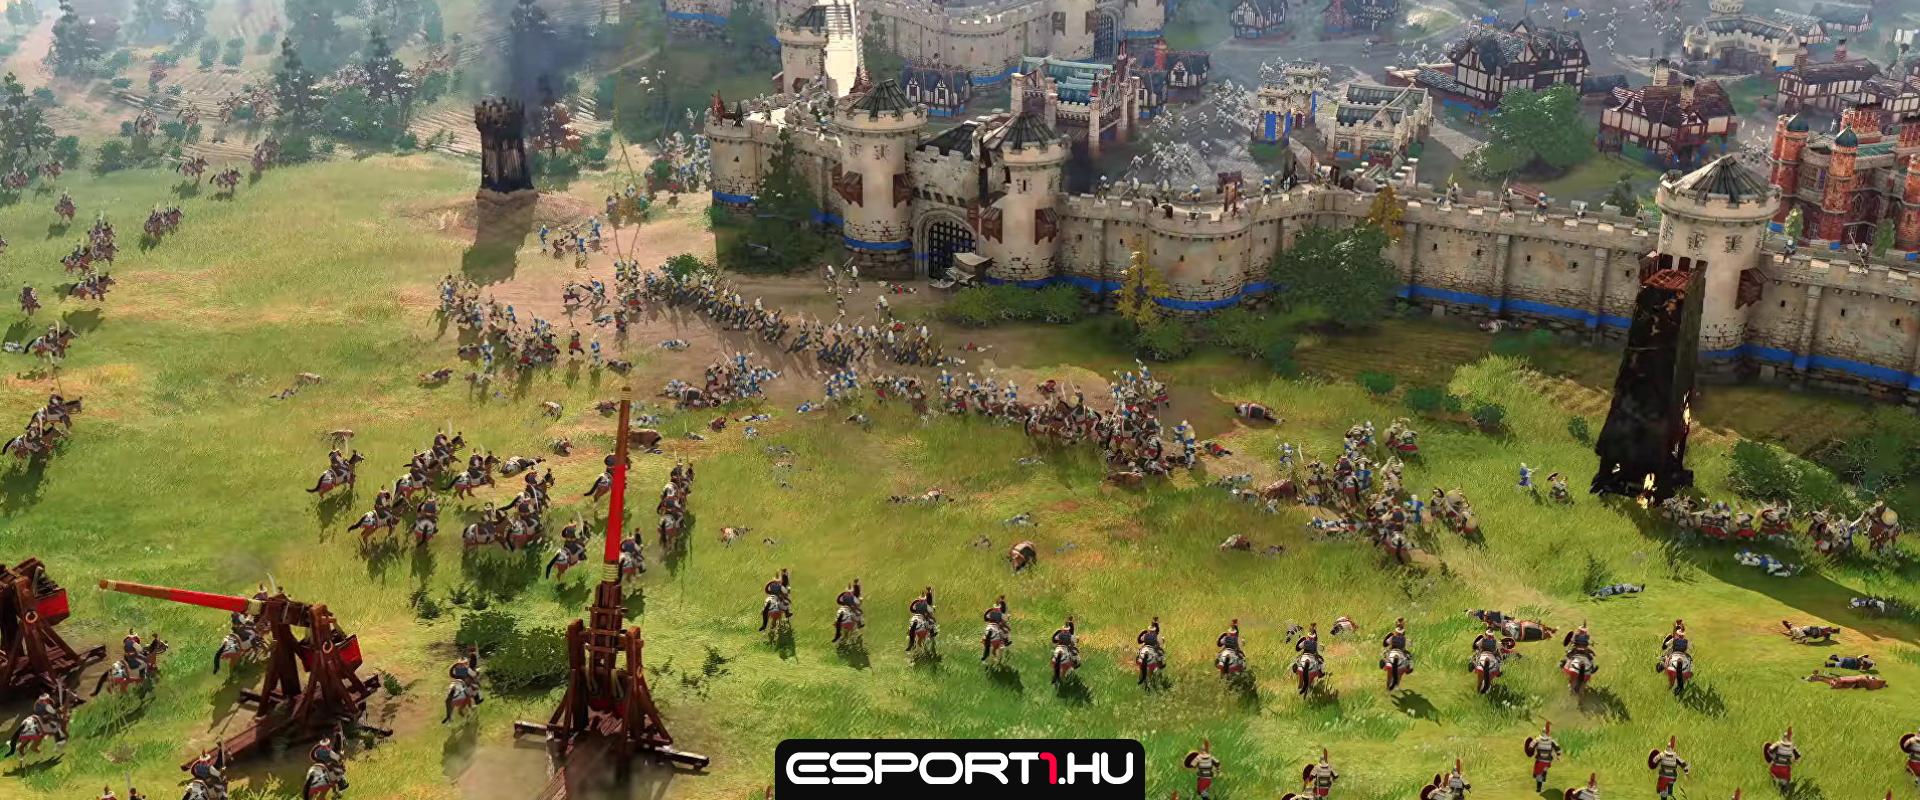 Izgalmas hírek érkeztek az Age of Empires franchise jövőjével kapcsolatban